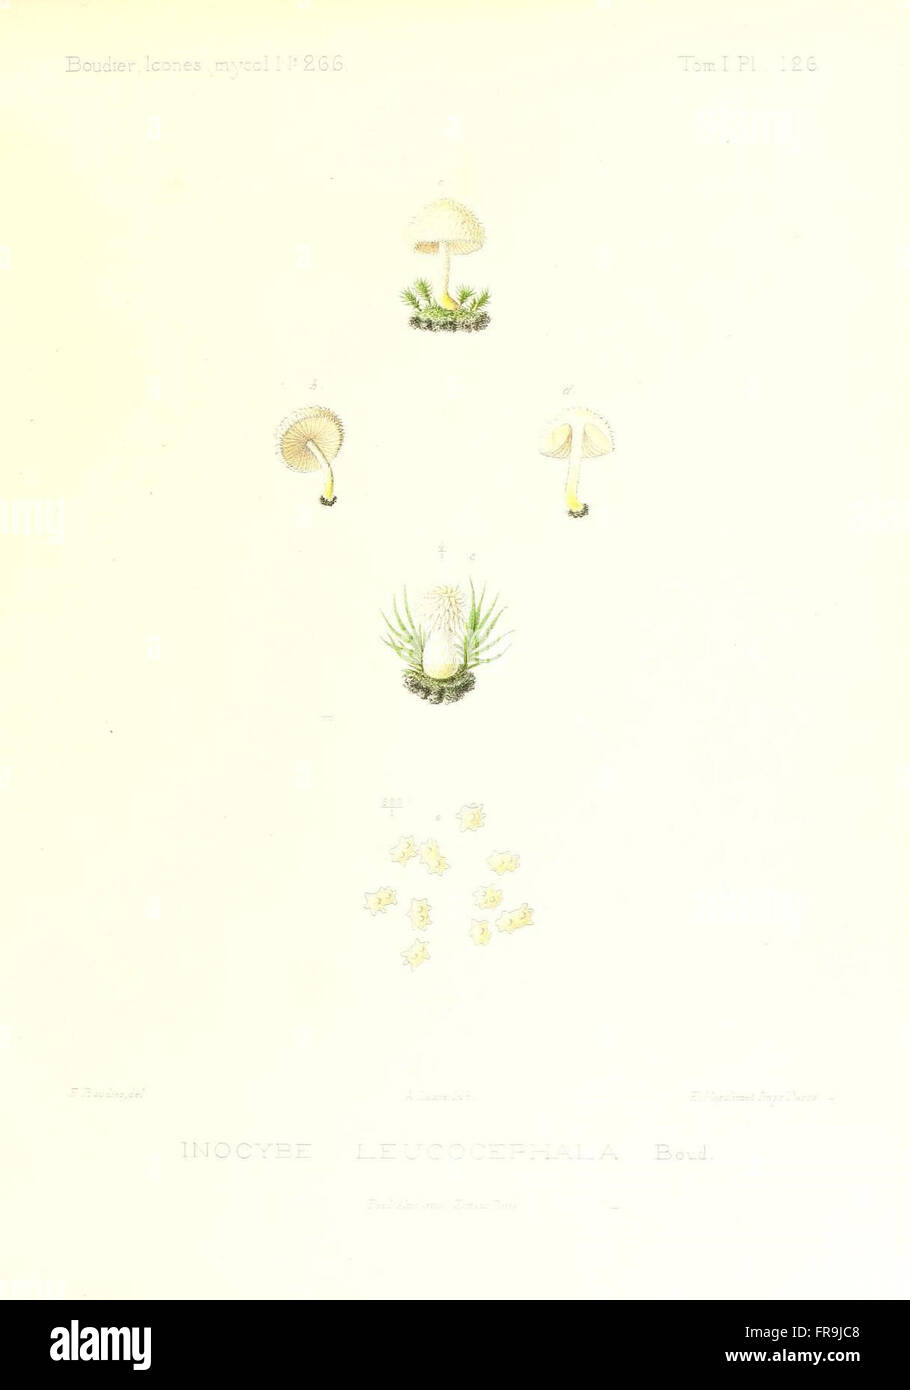 Icones mycologicC3A6, ou Iconographie des champignons de France principalement Discomycetes (Pl. 126) Stock Photo